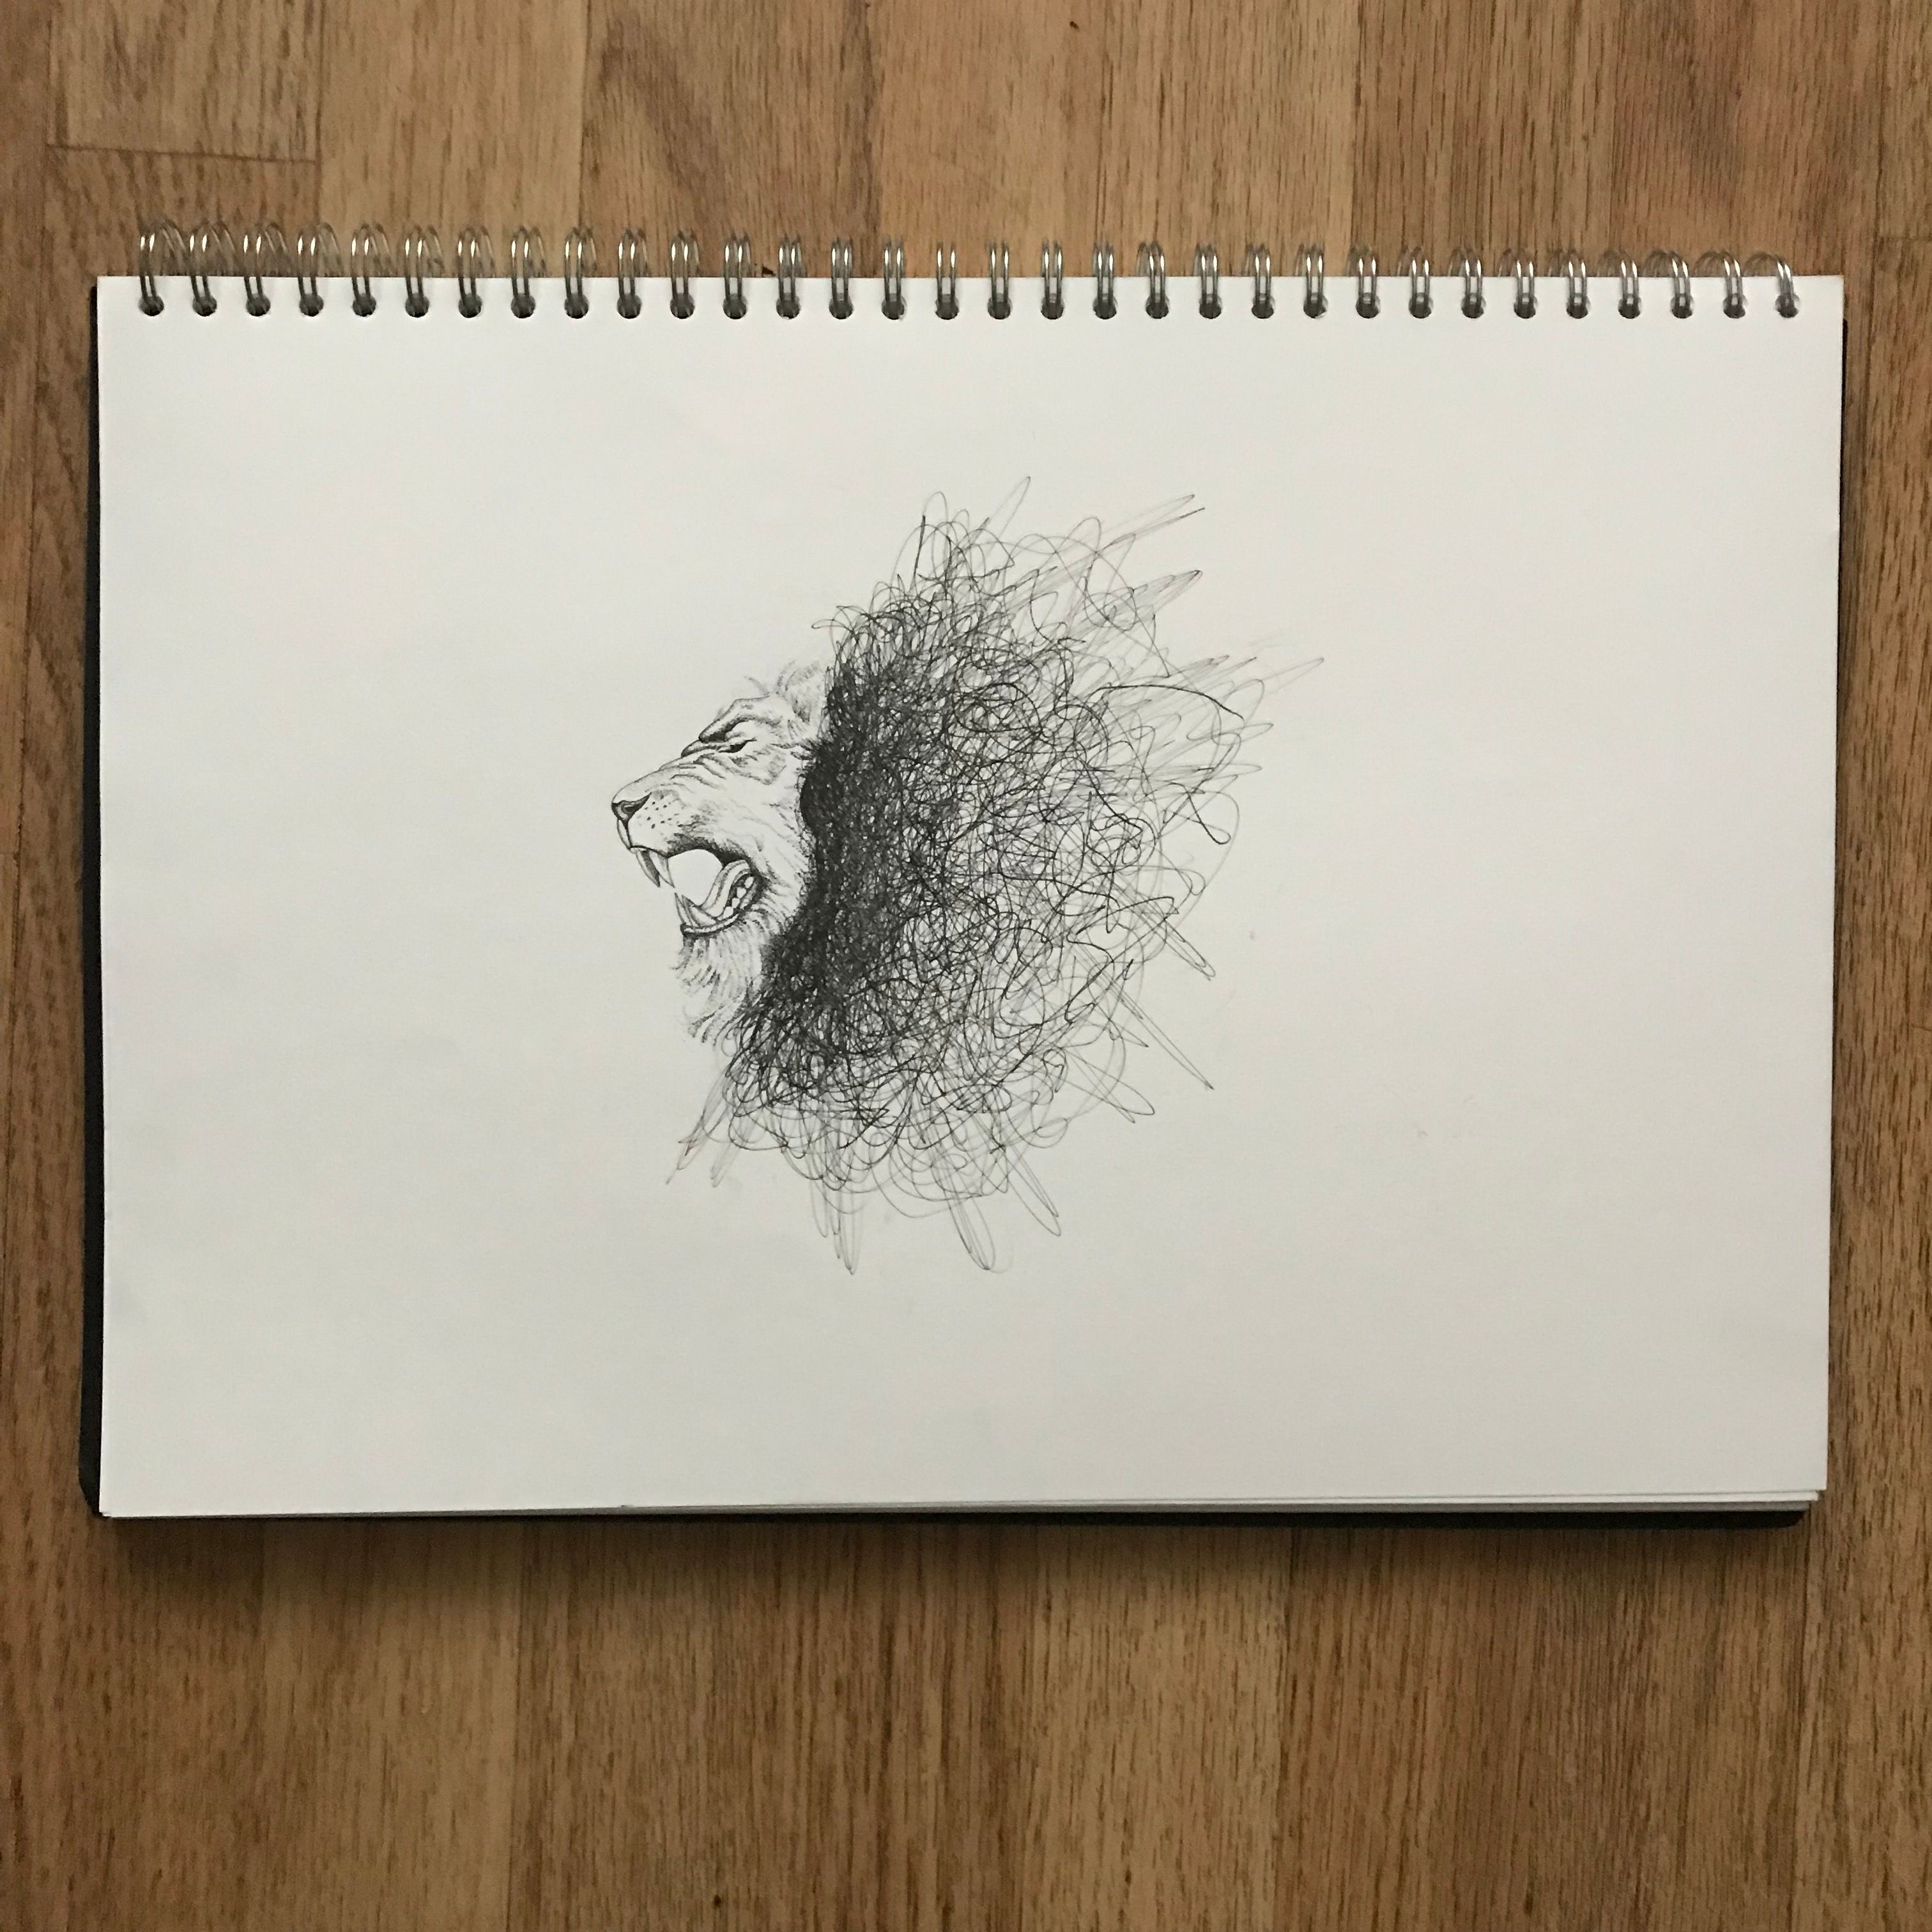 Quick sketch | Pen art work, Ballpoint pen art, Expressive art